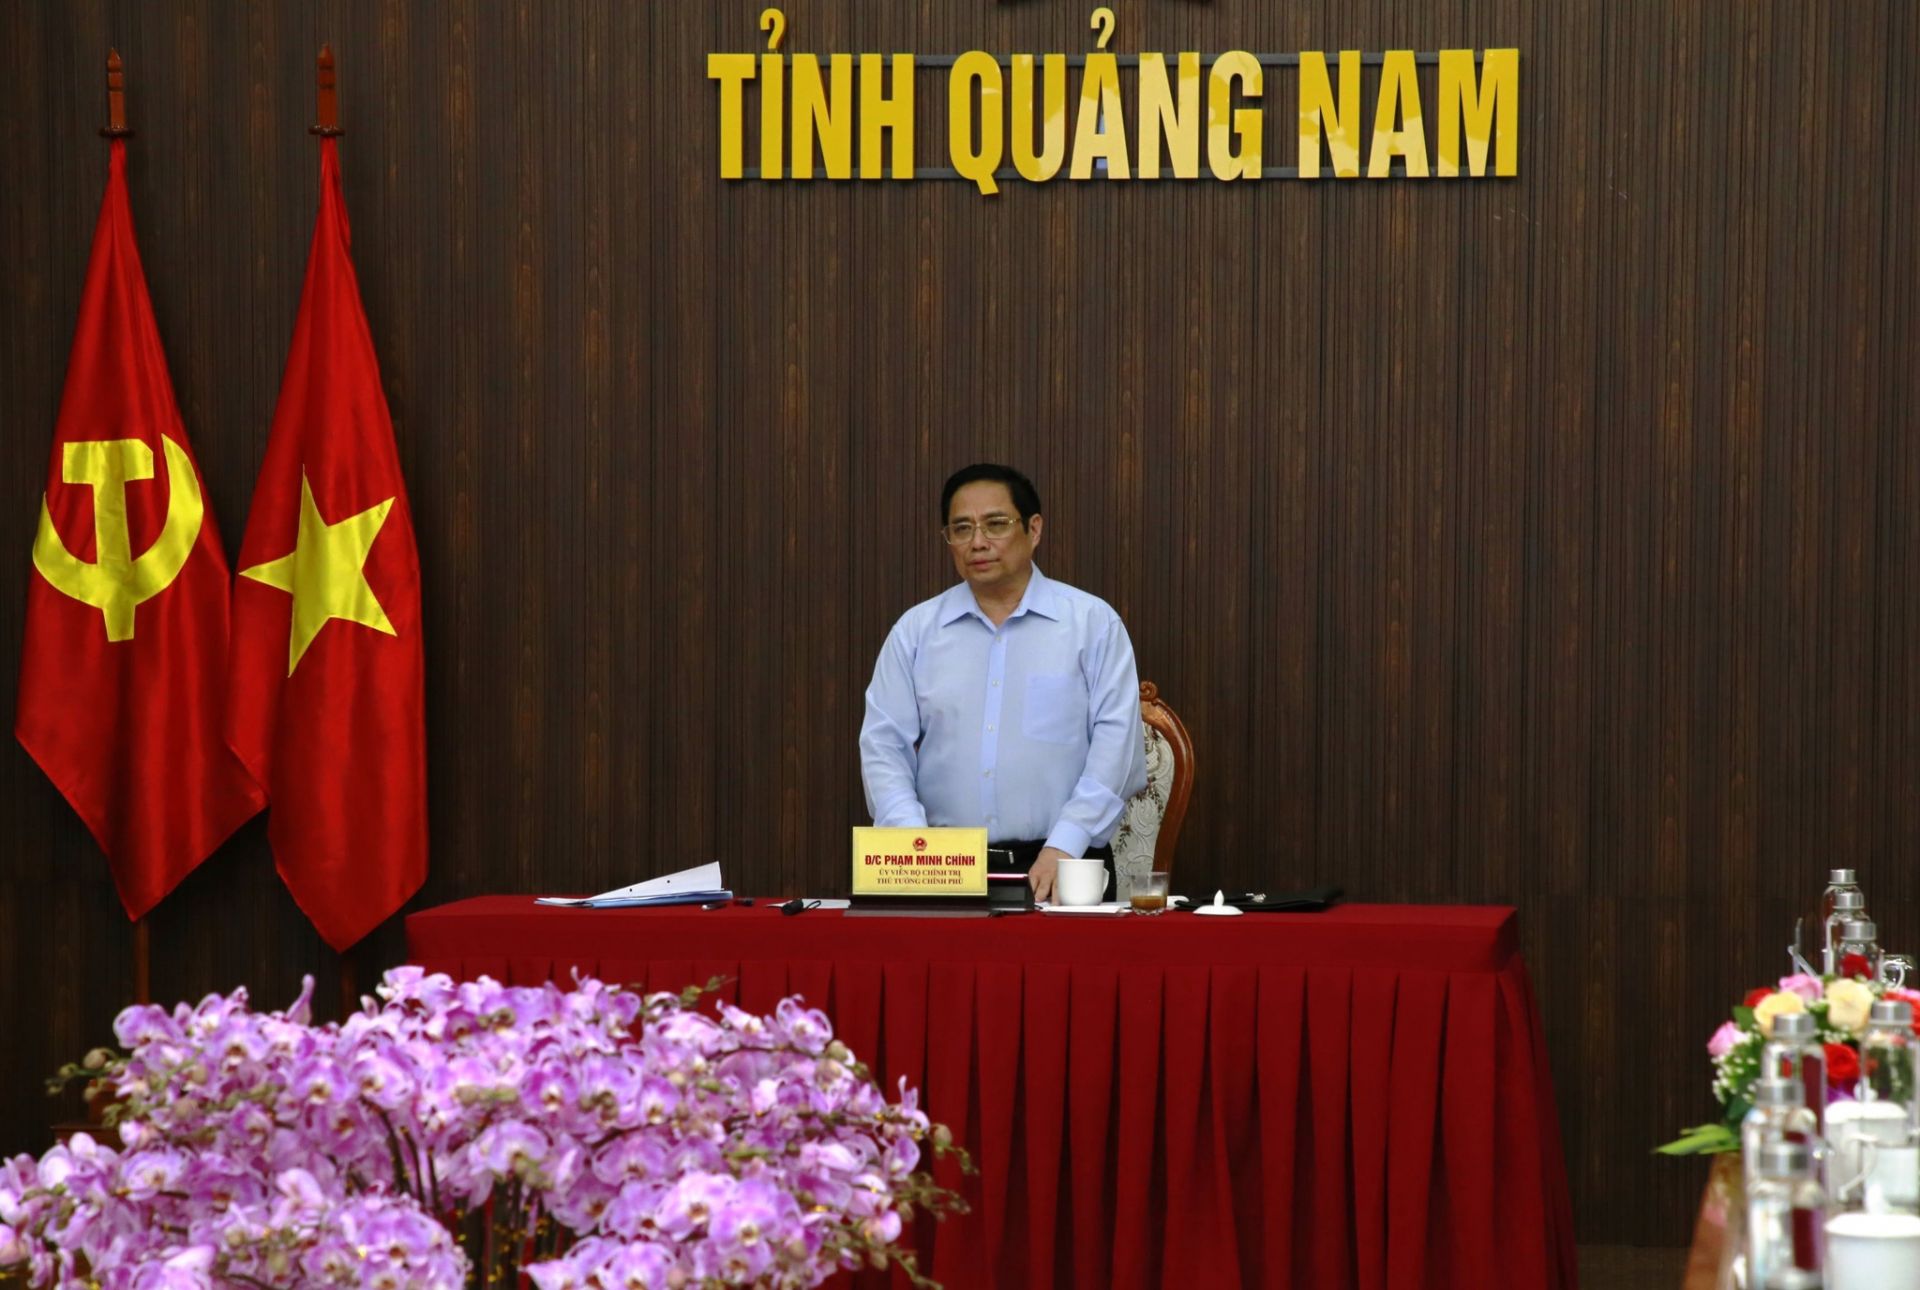 Thủ tướng Phạm Minh Chính đánh giá cao việc chuẩn bị nội dung làm việc của tỉnh, đặ